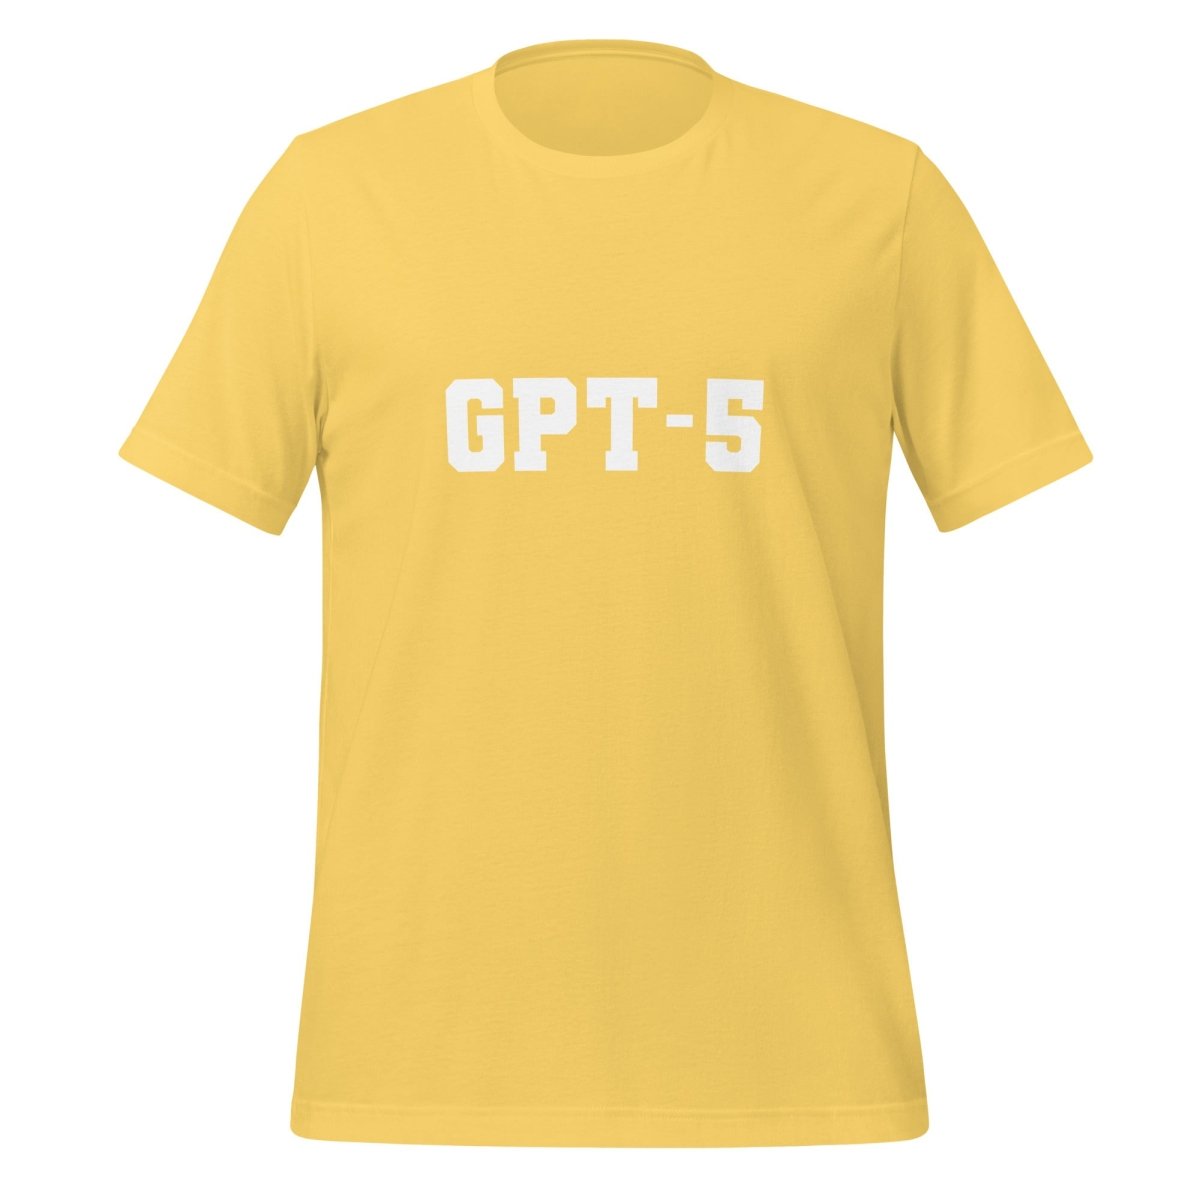 GPT - 5 T - Shirt 3 (unisex) - Yellow - AI Store